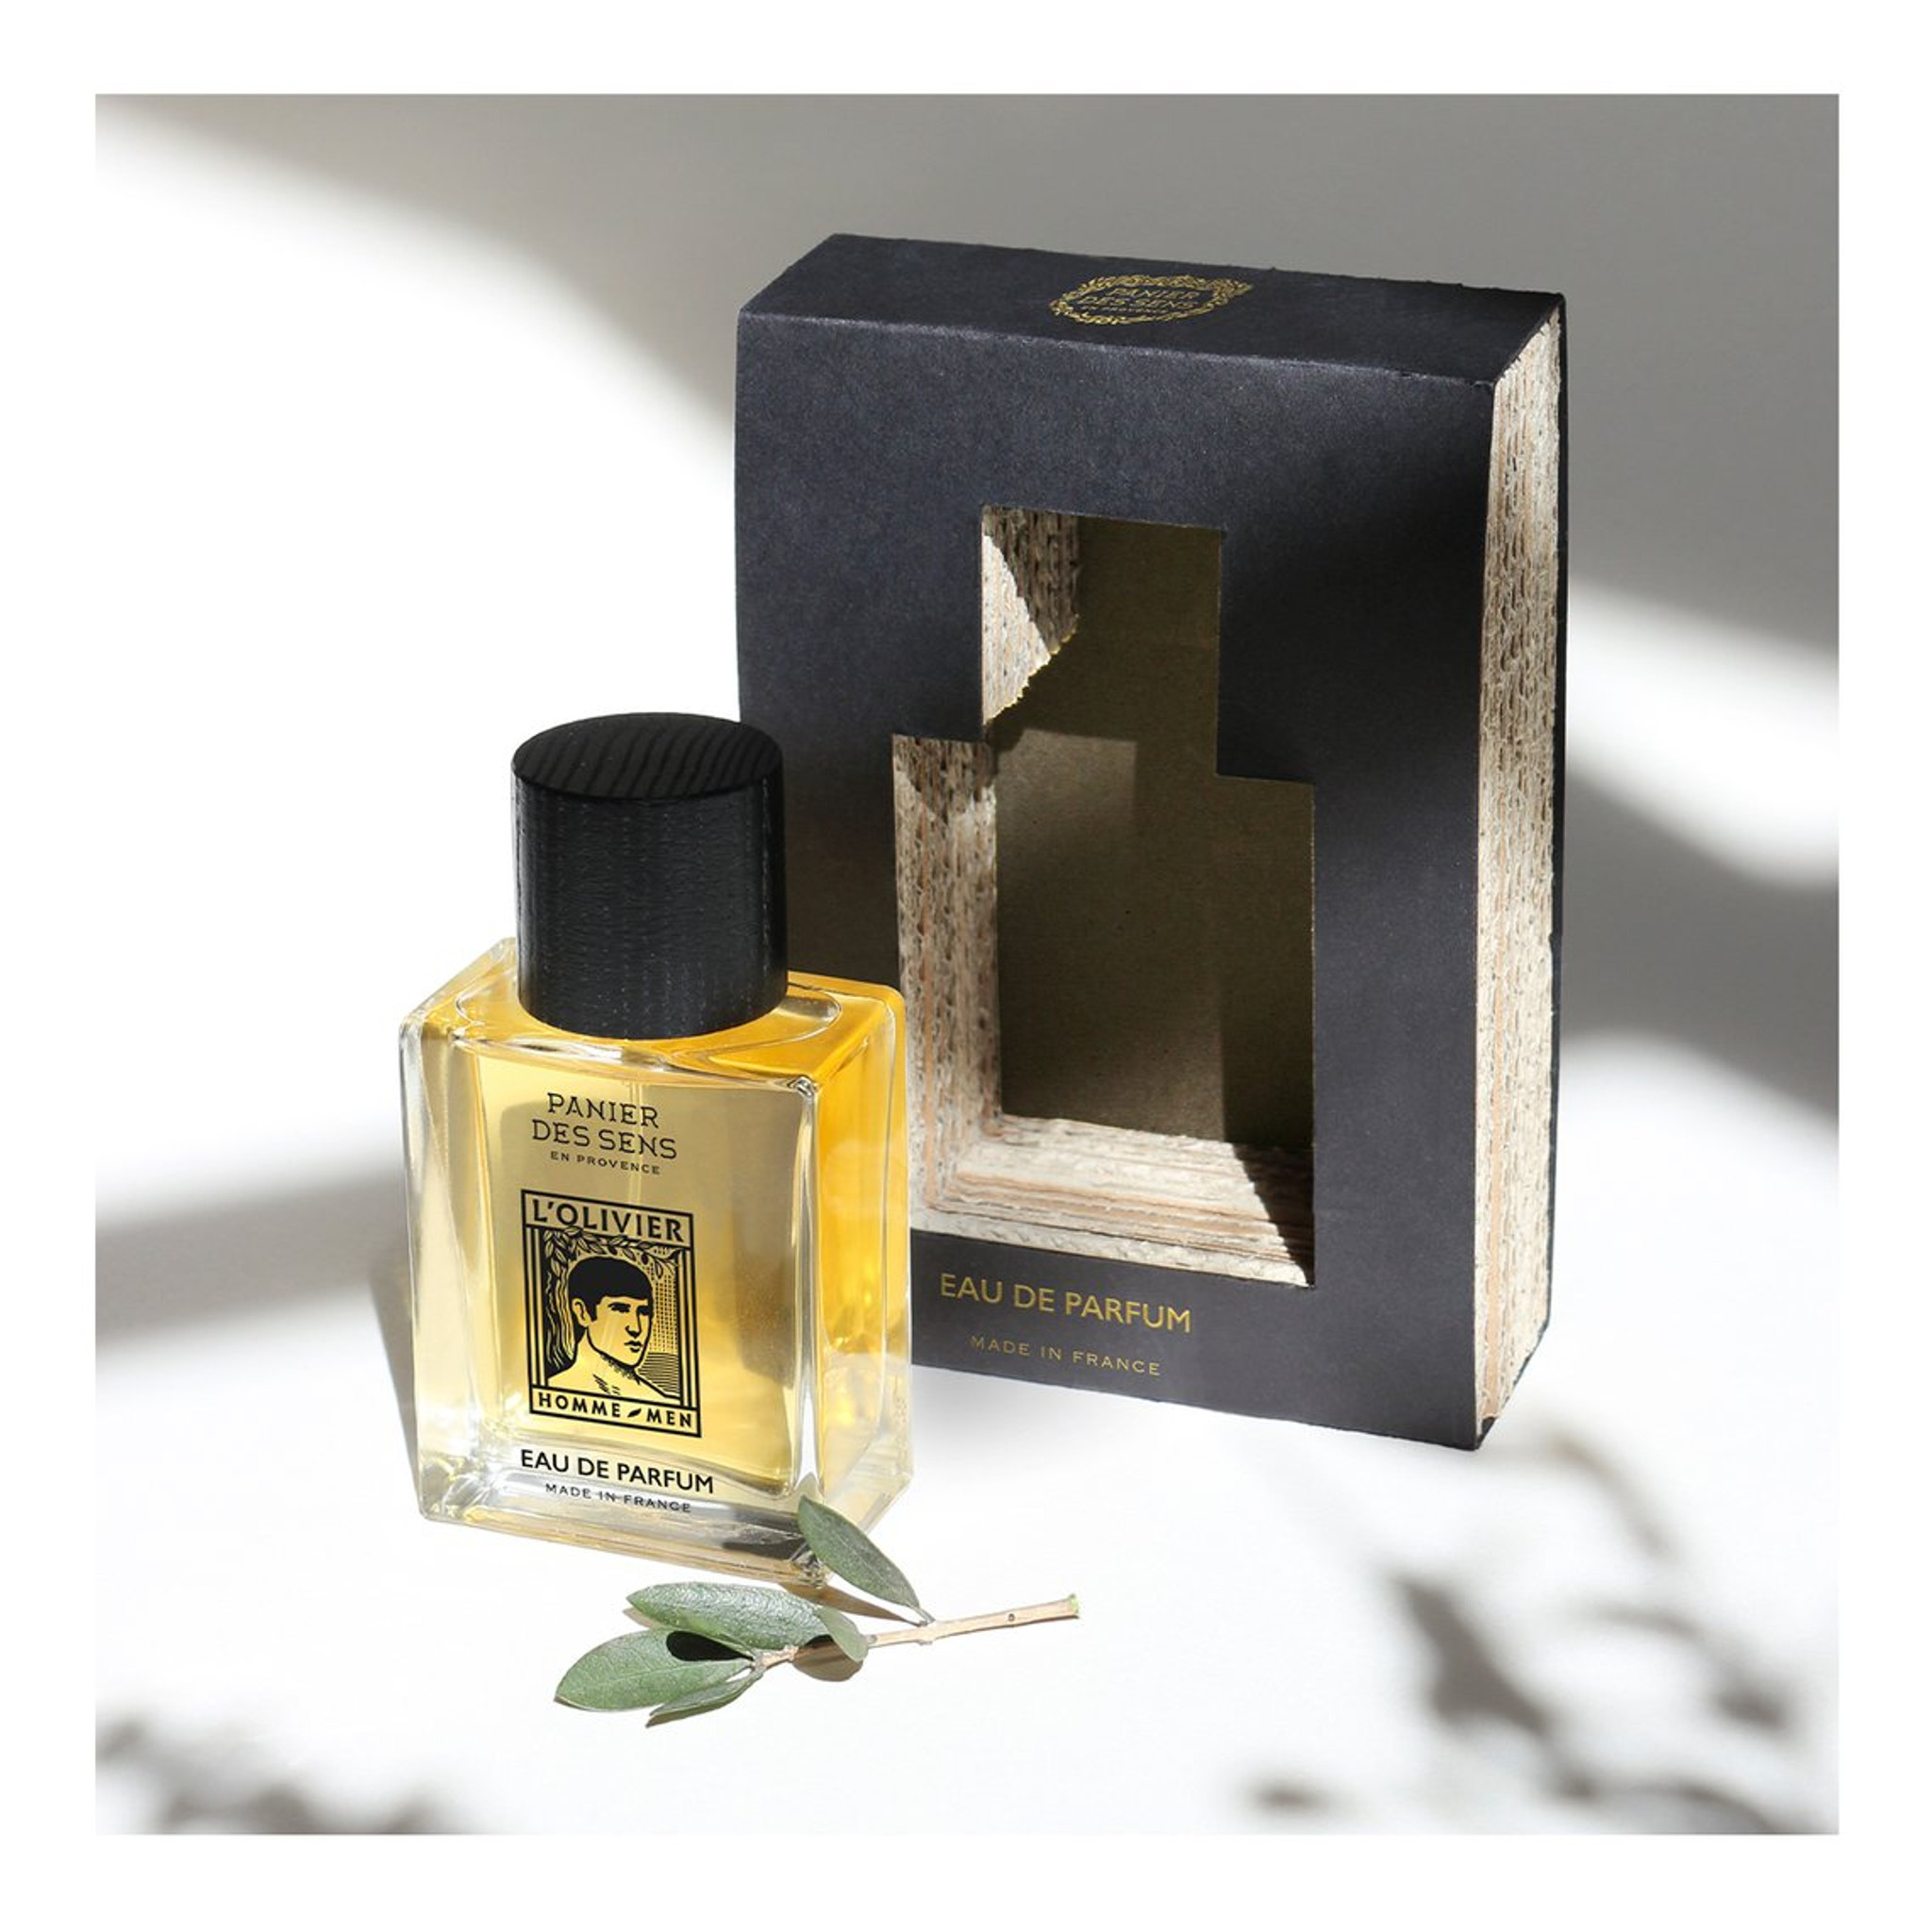 Panier des Sens L'Olivier Eau de Parfum - 50ml